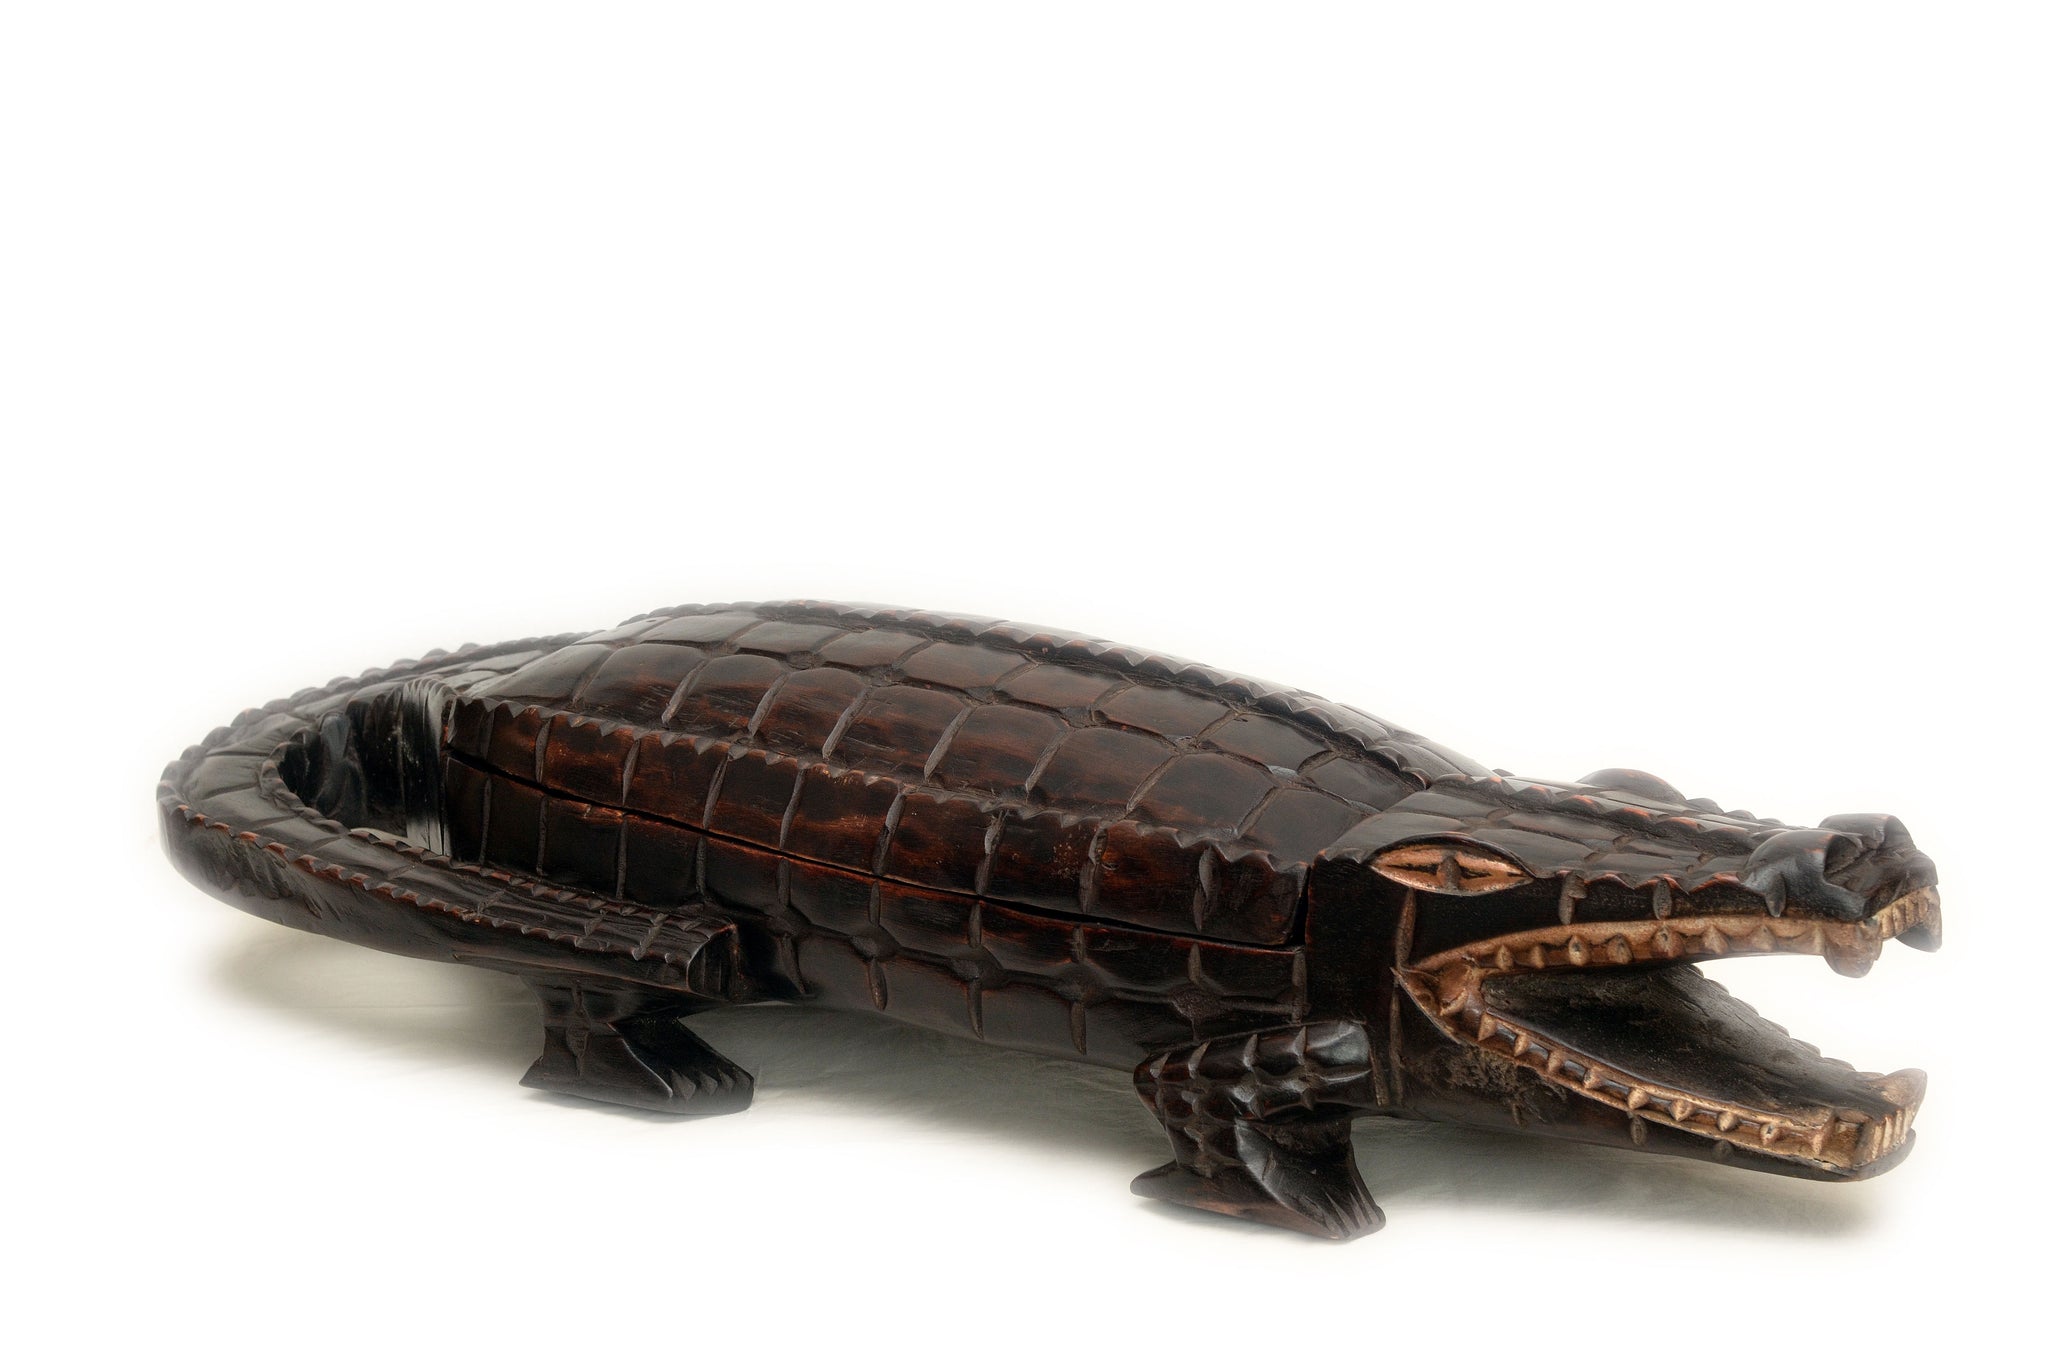 The Crocodile | Ancestral 'Adjito' Board Game